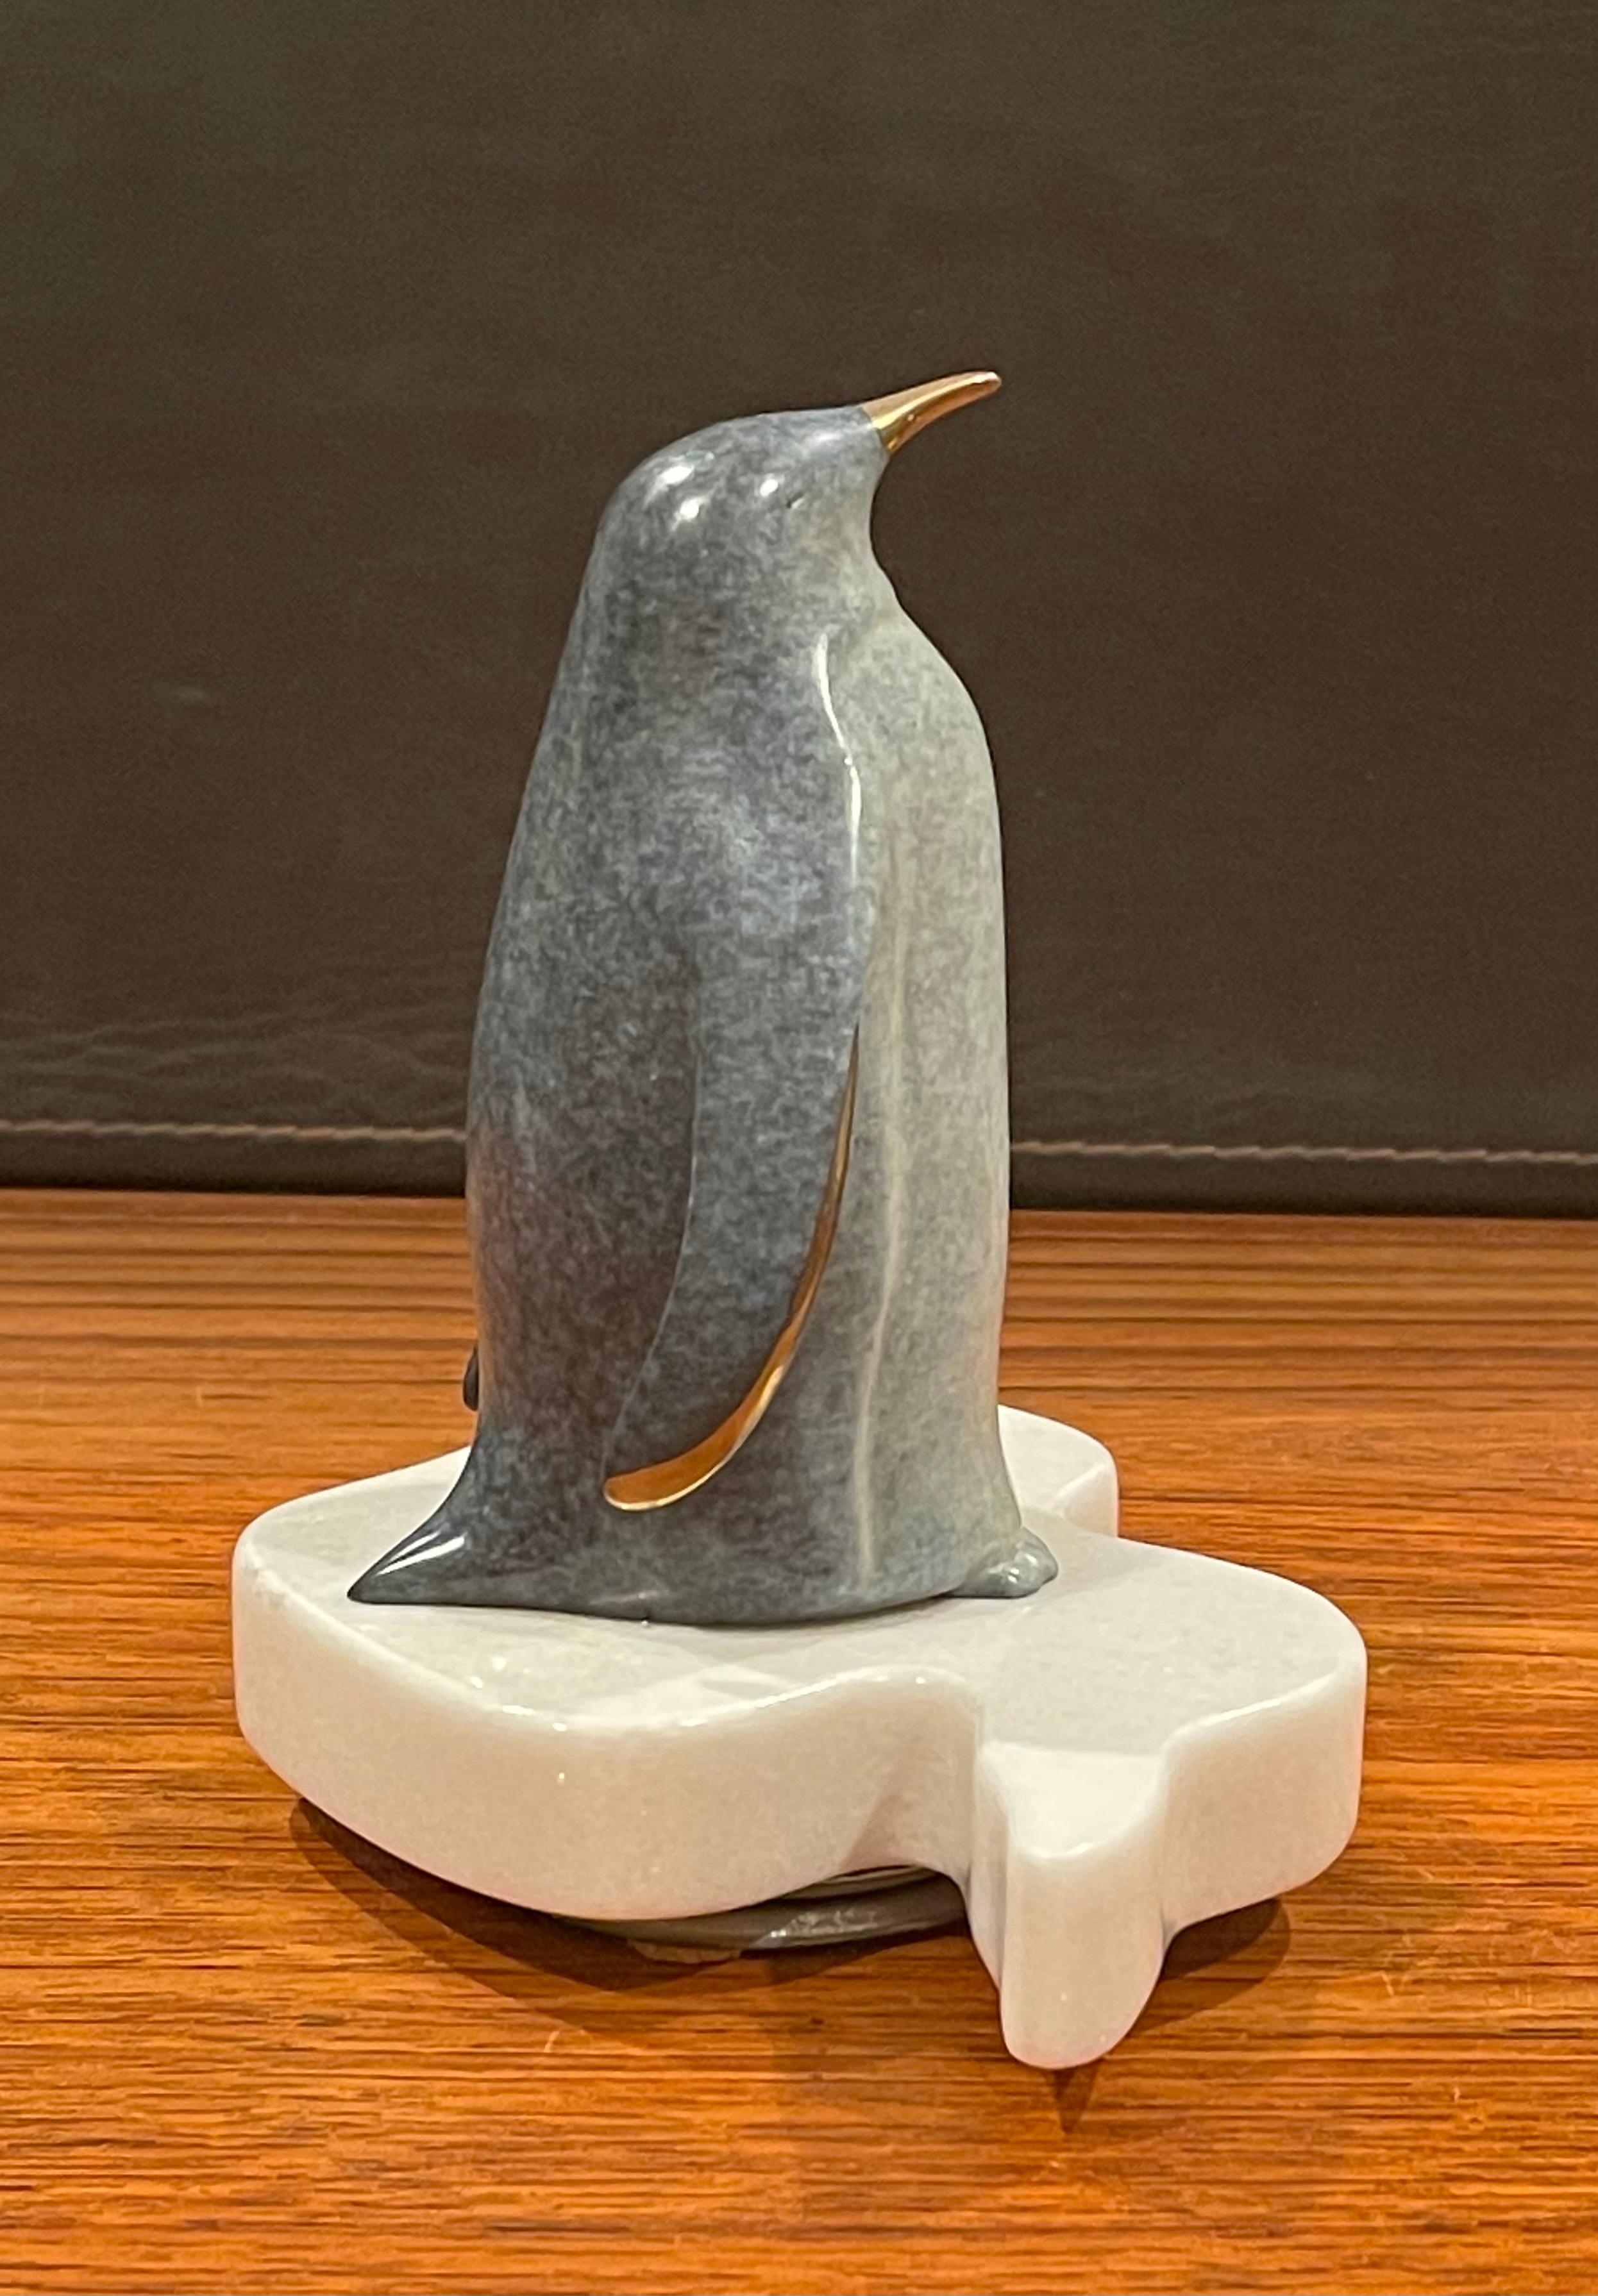 penguin sculptures